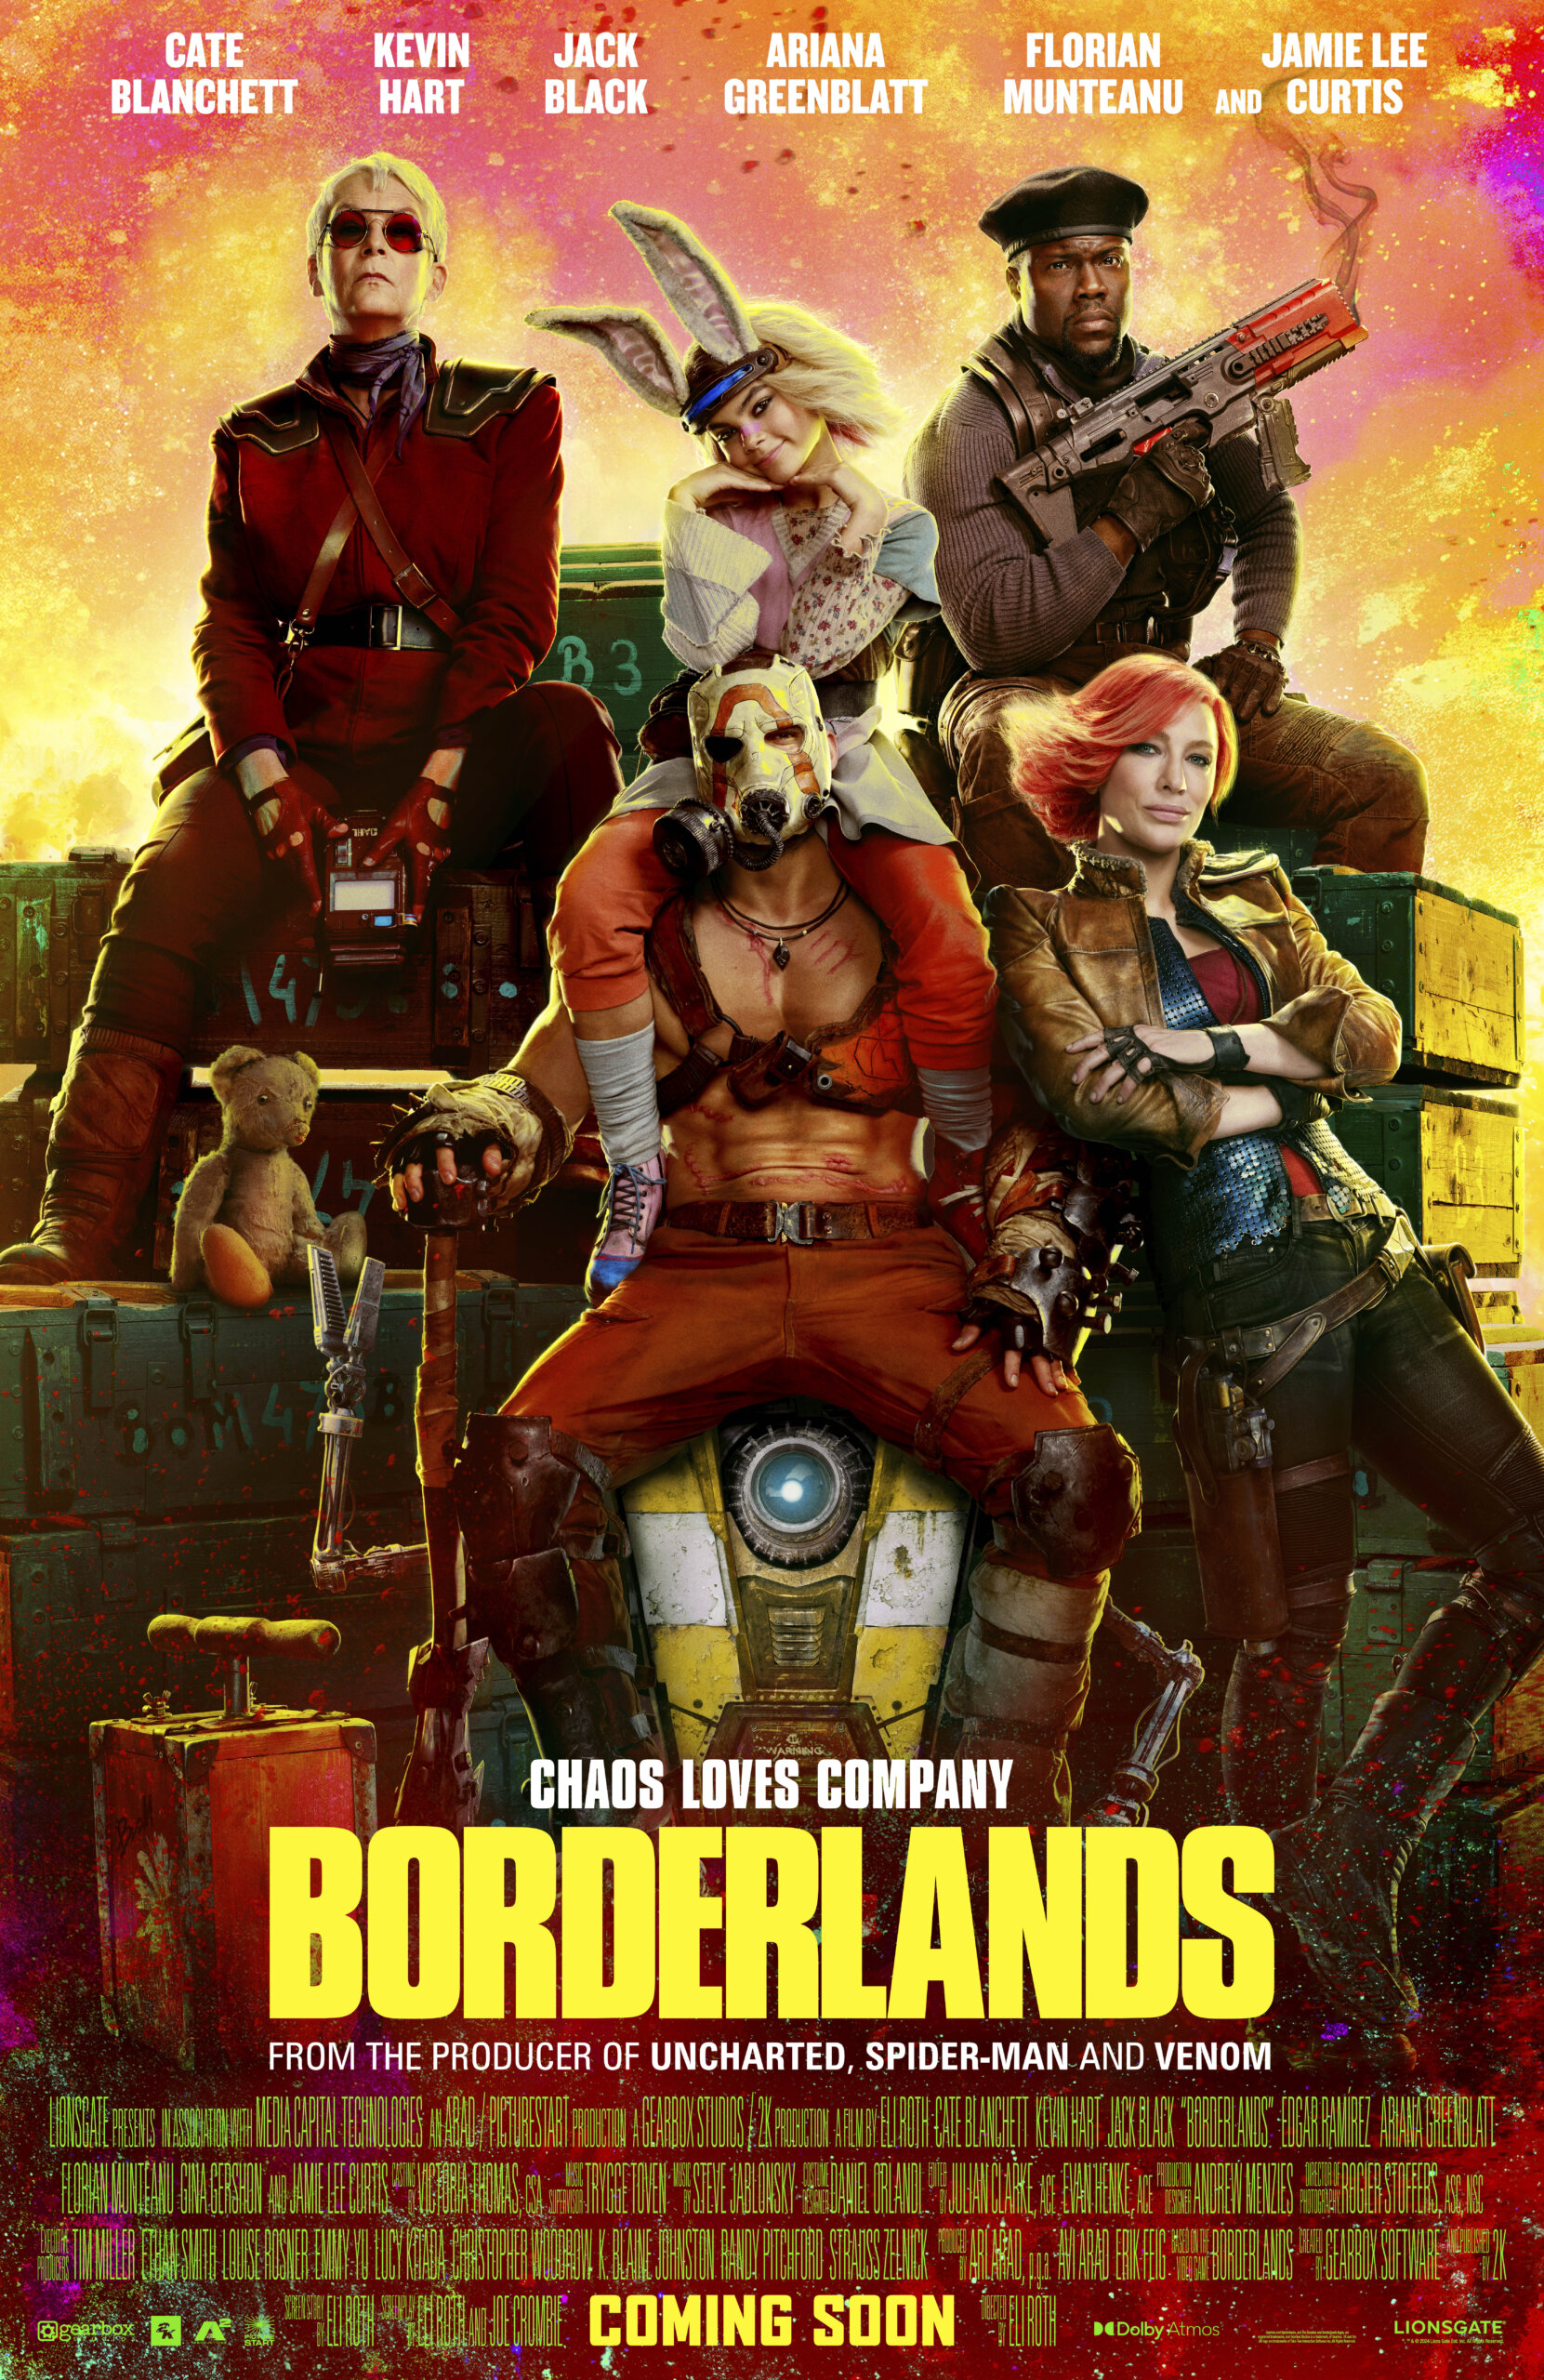 1st Trailer For 'Borderlands' Movie Starring Cate Blanchett, Kevin Hart, & Jack Black